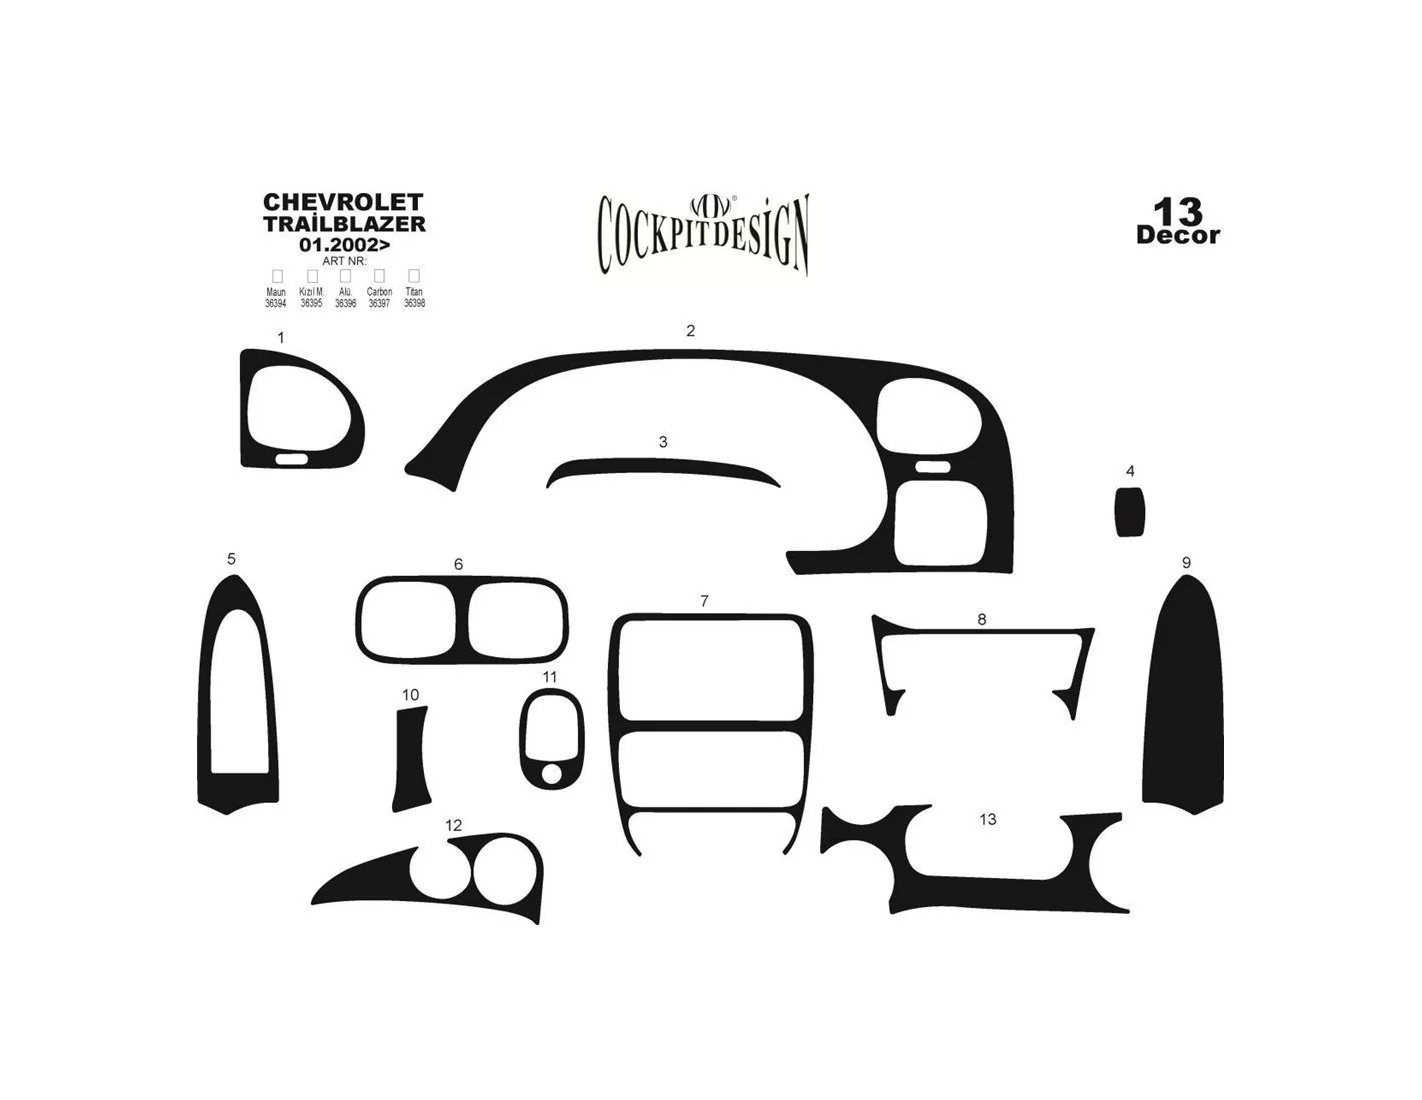 Chevrolet Trailblazer 01.2002 3M 3D Interior Dashboard Trim Kit Dash Trim Dekor 13-Parts